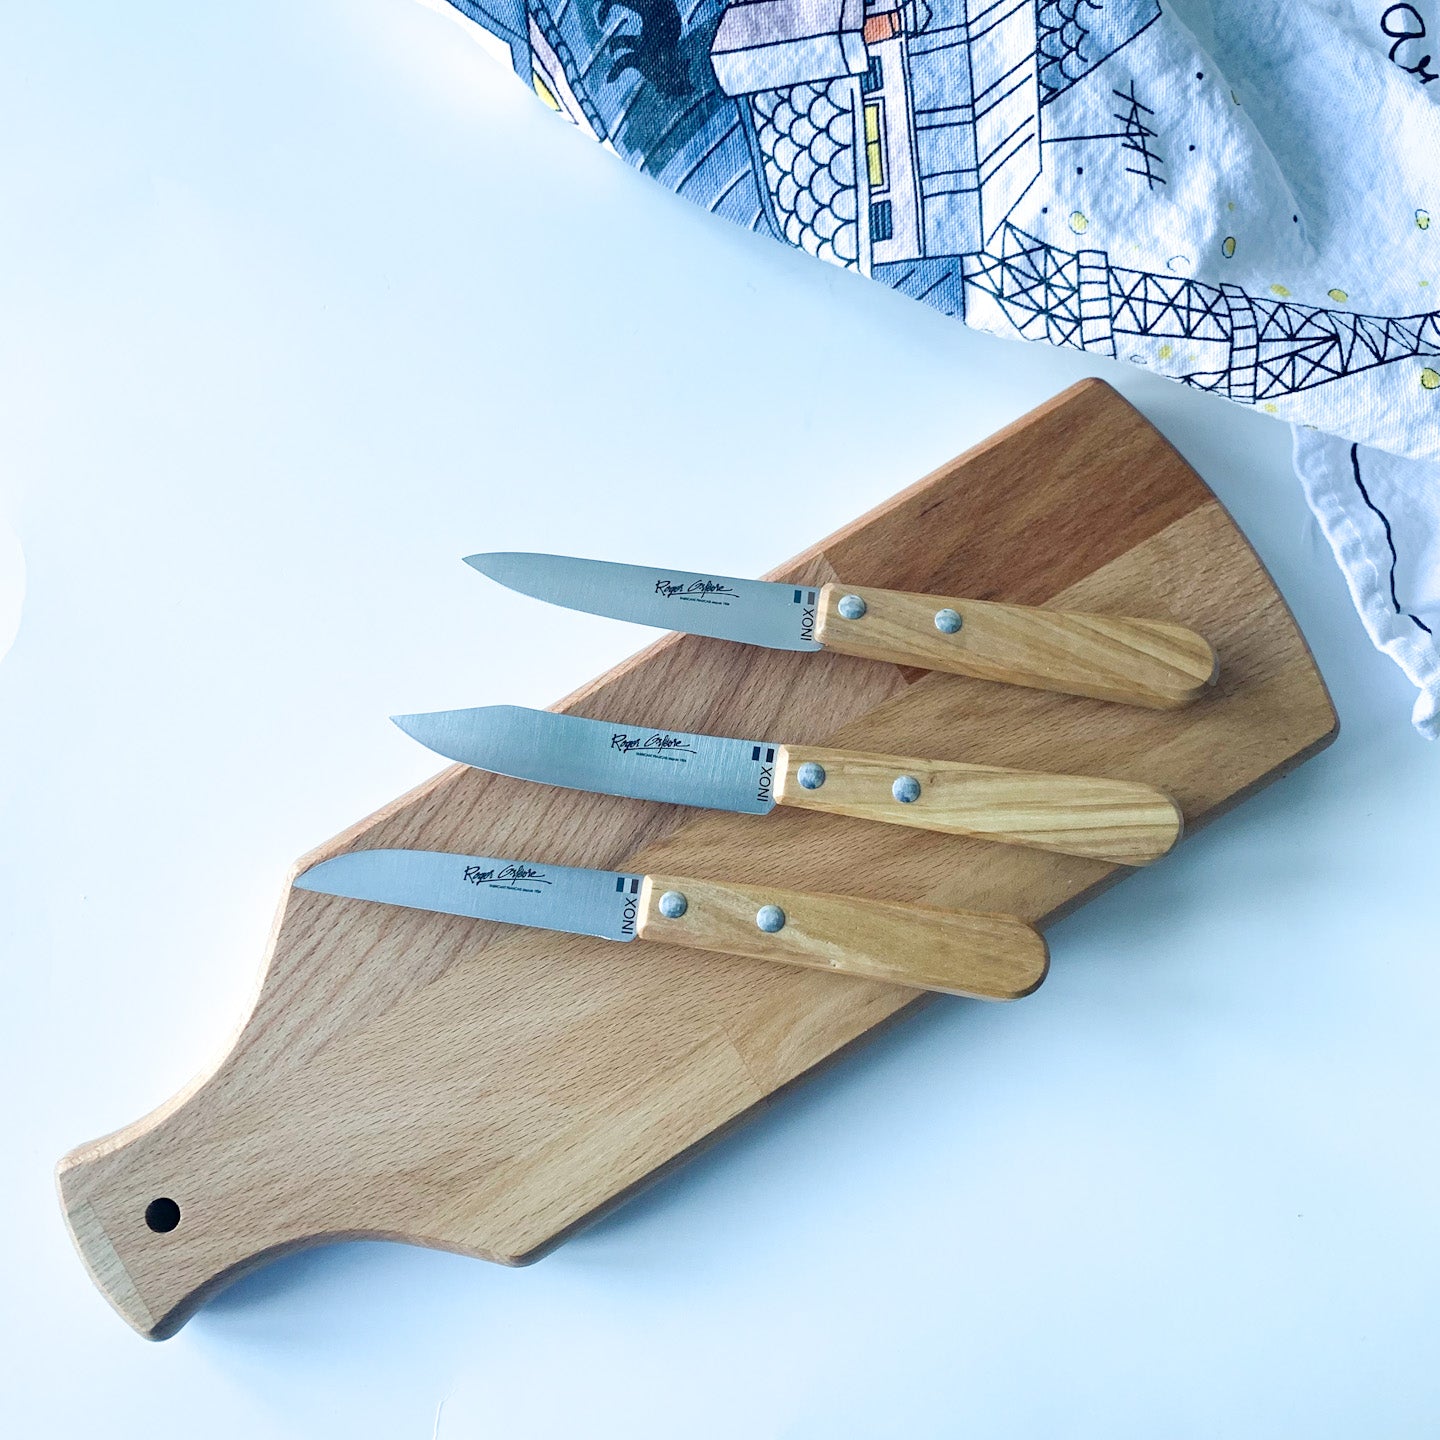 Roger Orfevre Canada Knife Set with Cutting Board Couteaux de Rémi Clementine Boutique